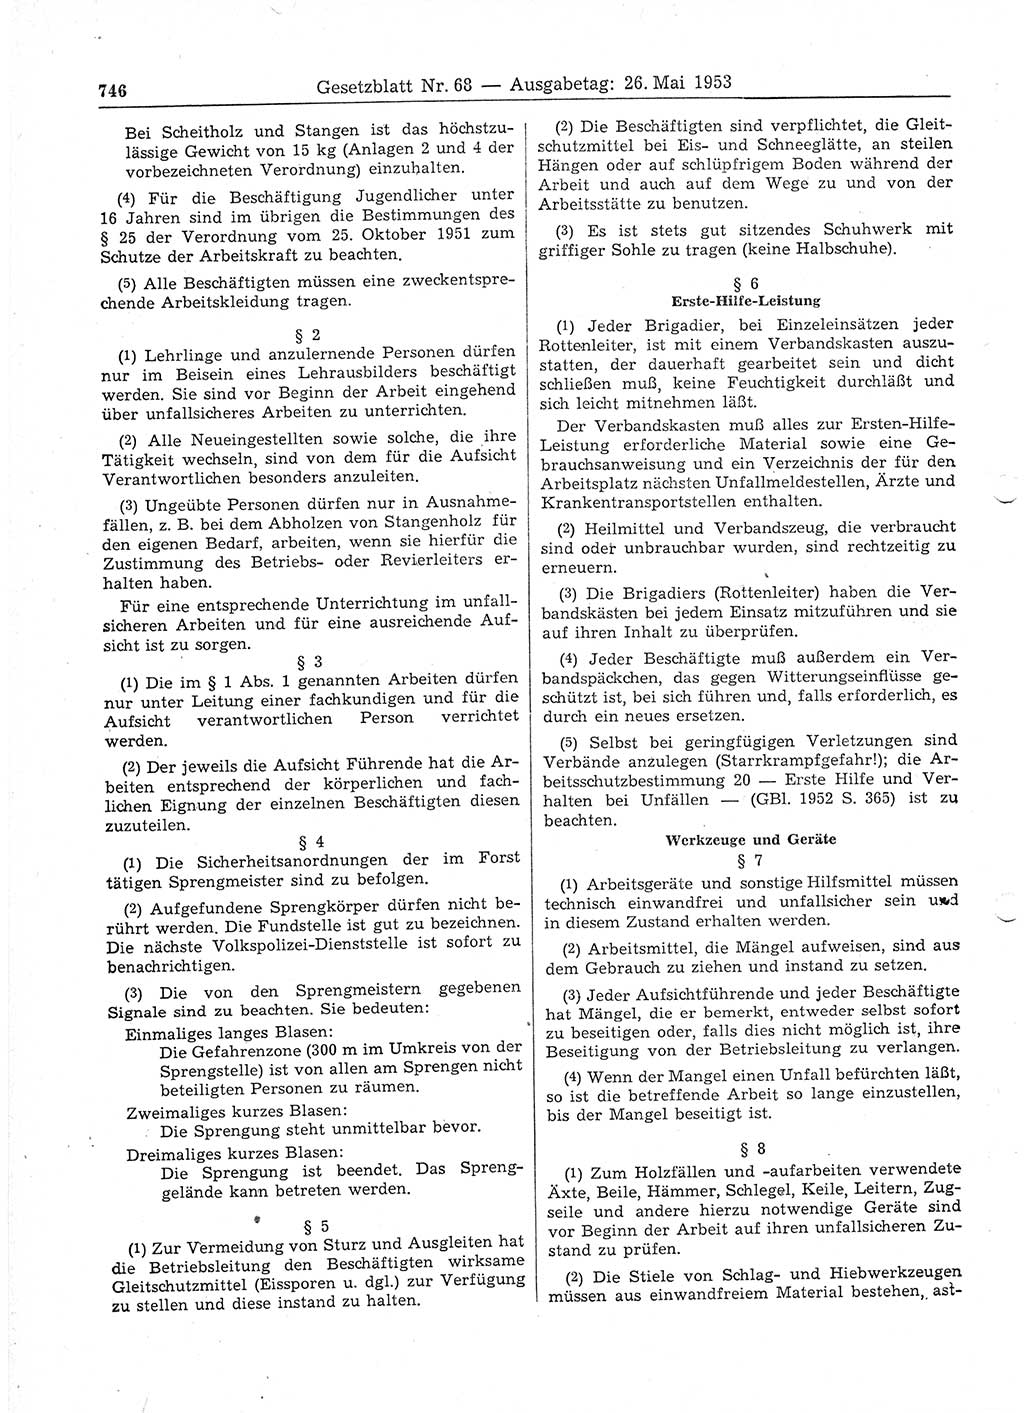 Gesetzblatt (GBl.) der Deutschen Demokratischen Republik (DDR) 1953, Seite 746 (GBl. DDR 1953, S. 746)